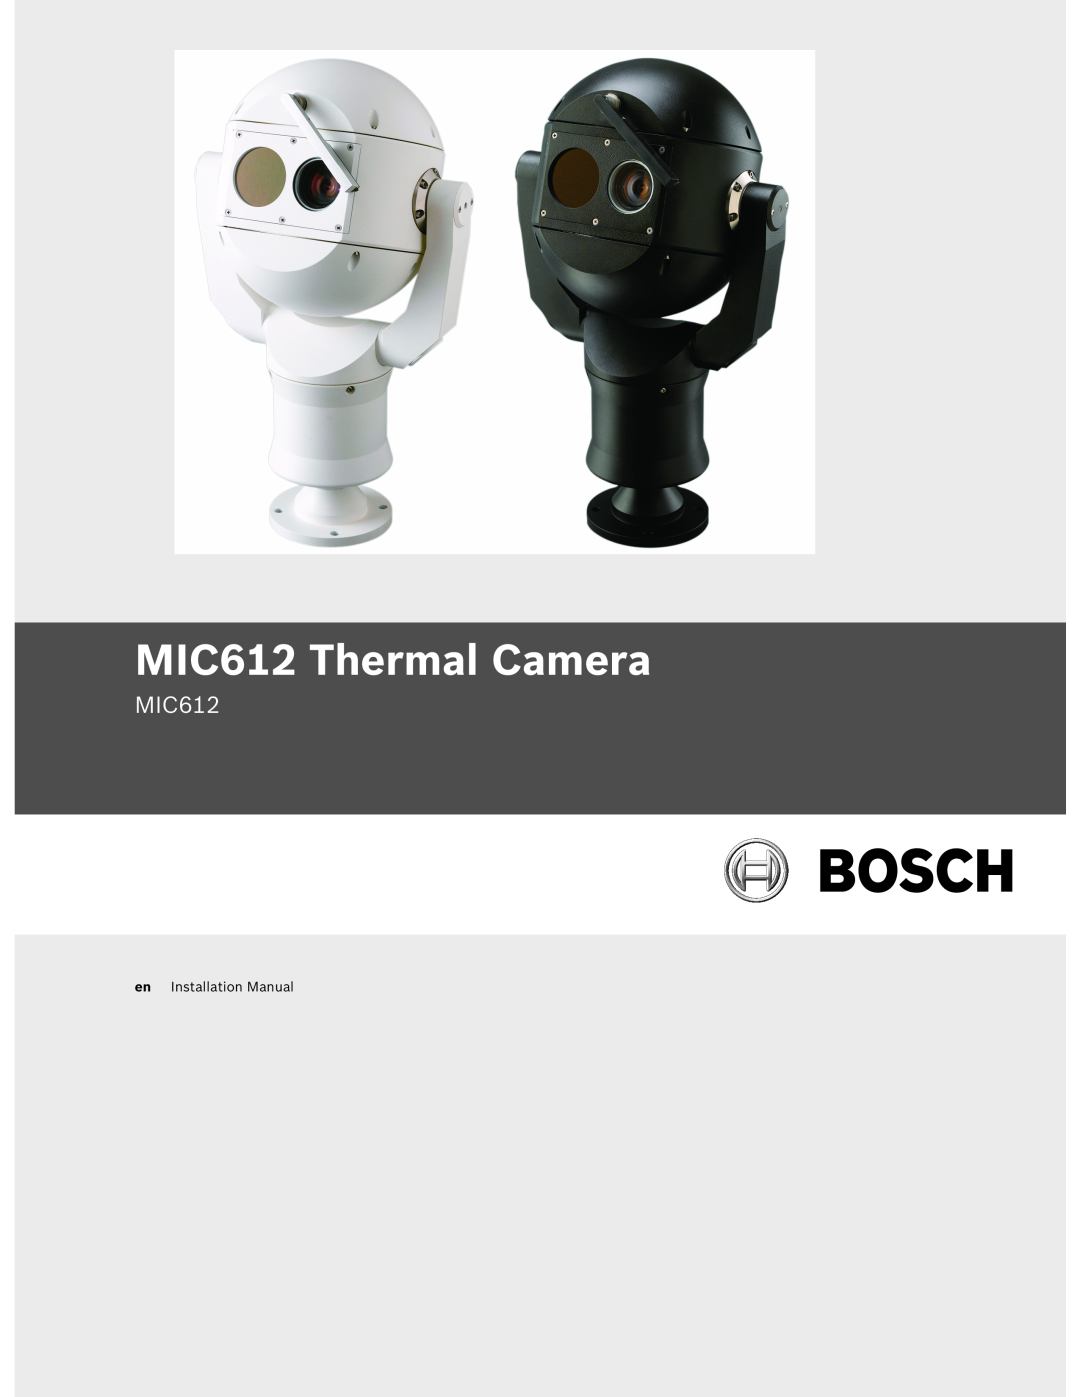 Bosch Appliances installation manual MIC612 Thermal Camera, en Installation Manual 